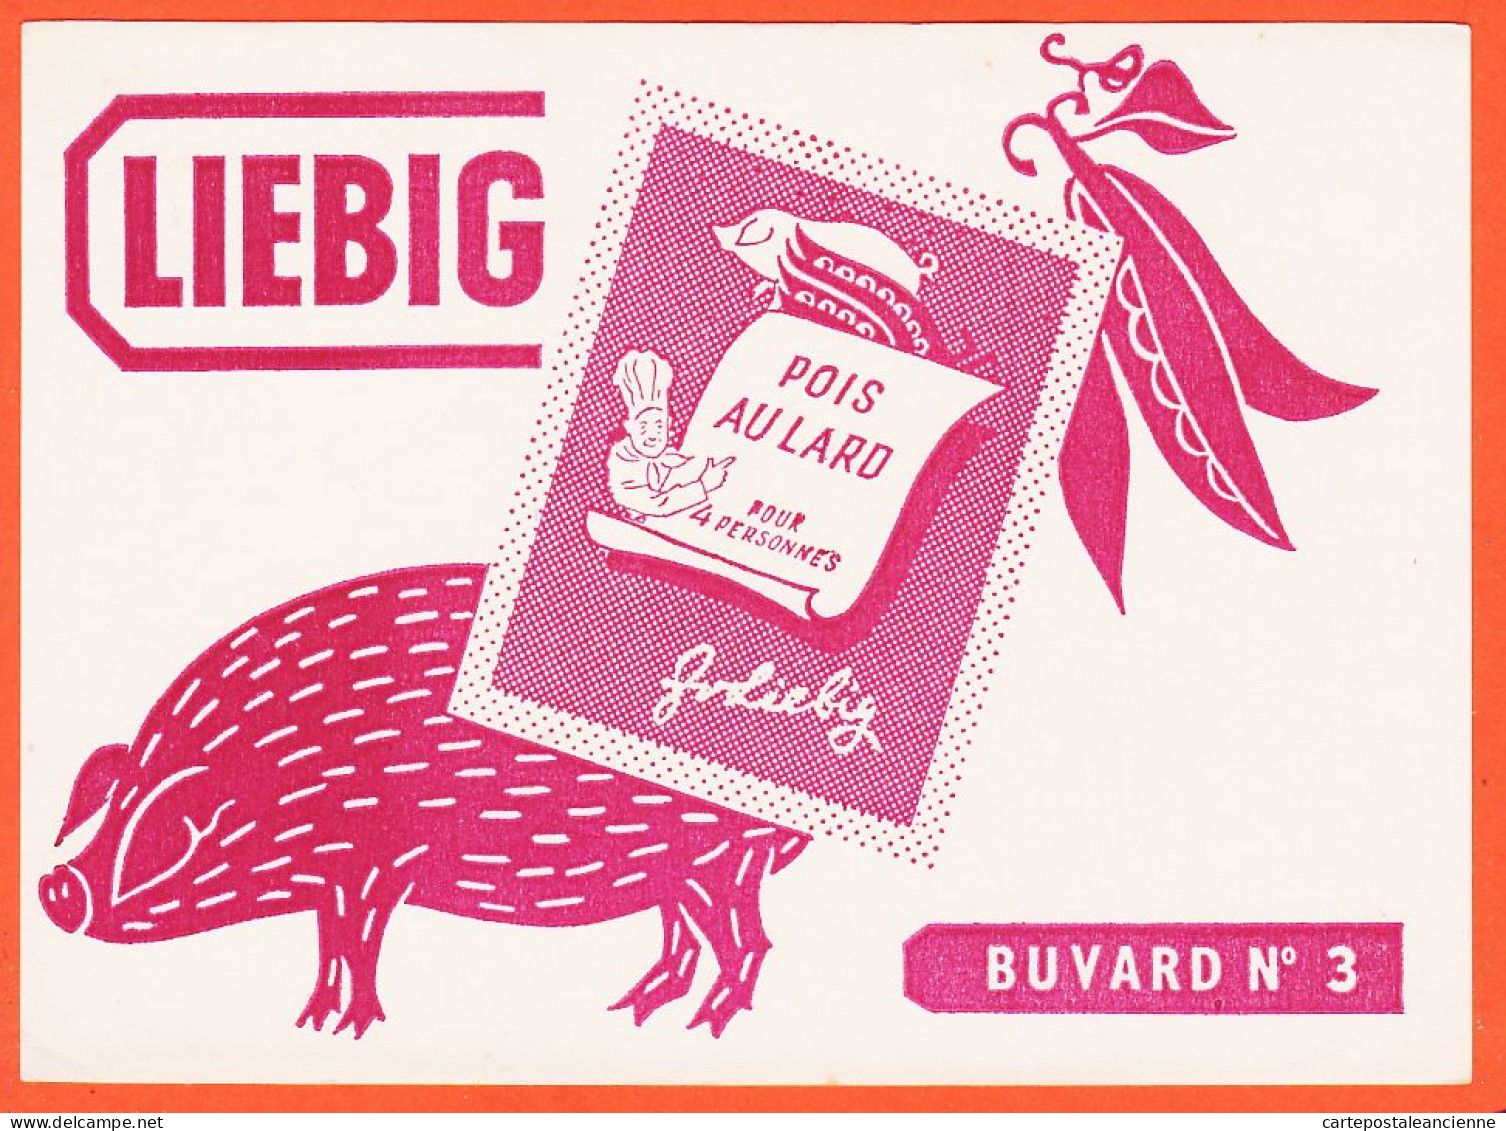 06235 / LIEBIG Cochon Pois Au Lard  Buvard N° 3 Blotter - Soups & Sauces